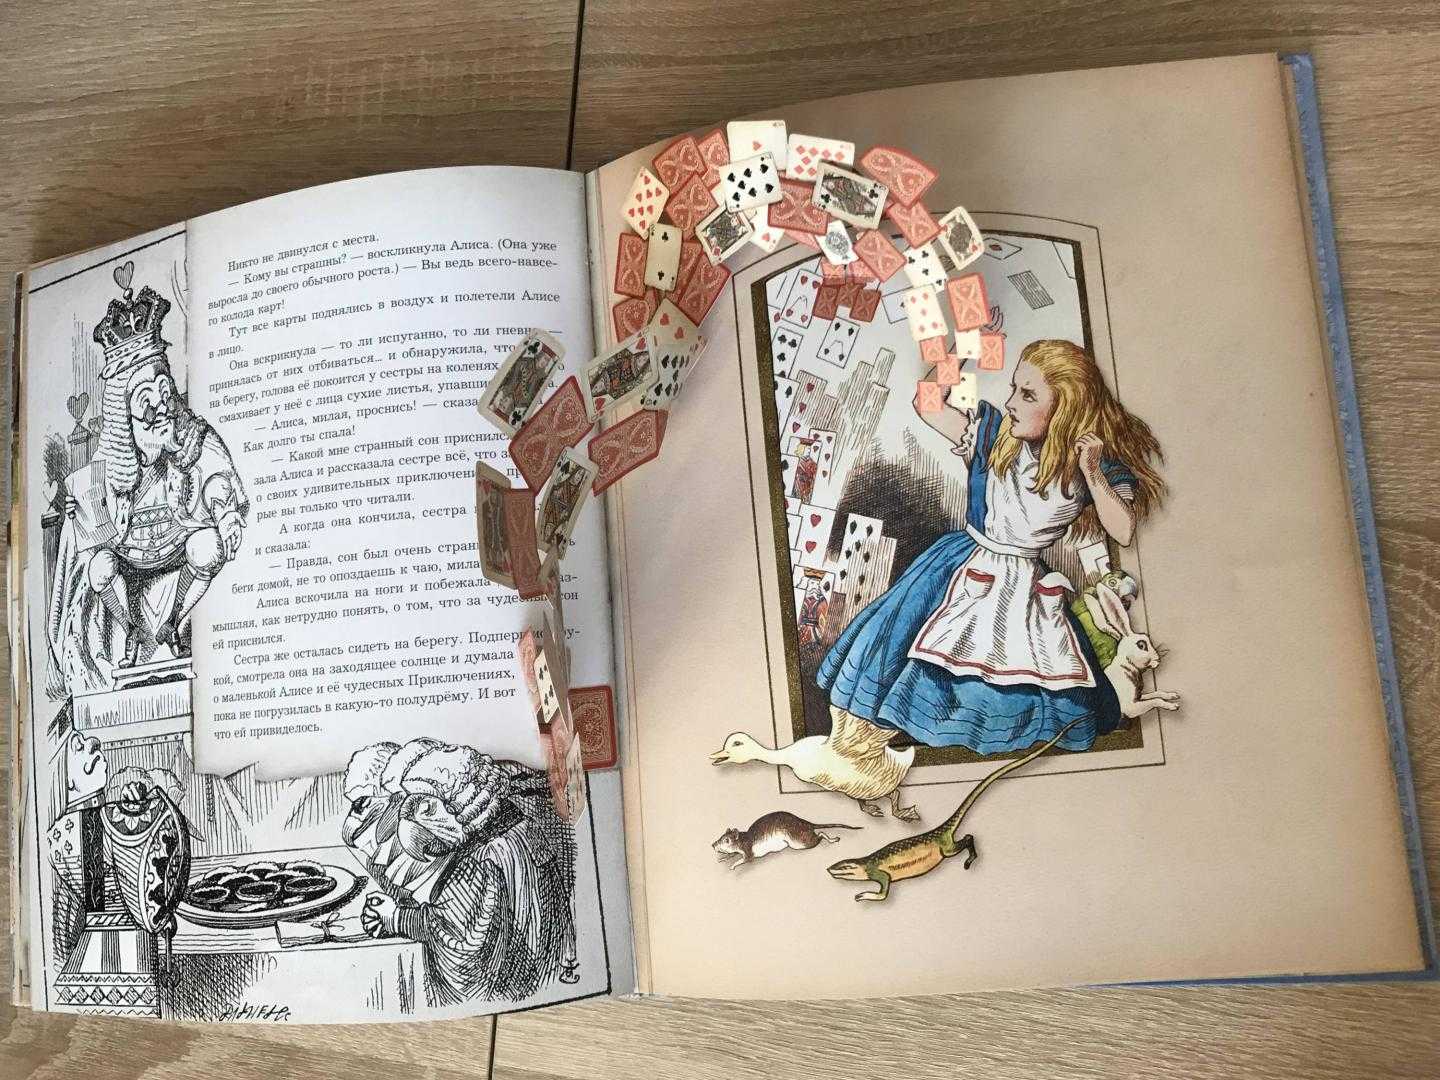 Алиса в стране чудес (льюис кэрролл) — читать онлайн